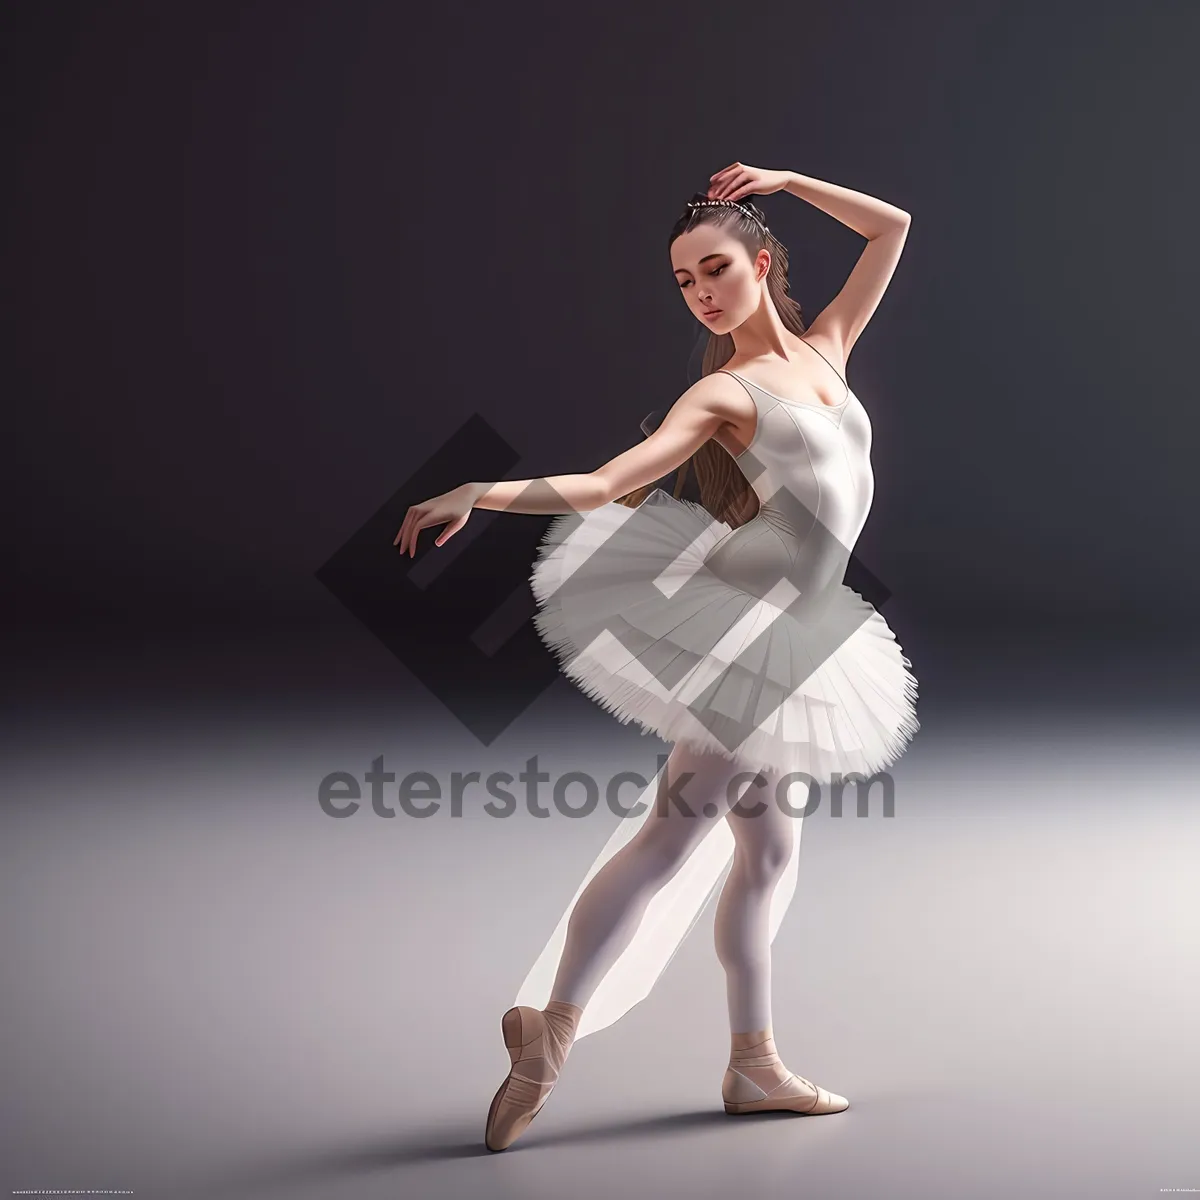 Picture of Elegant ballet dancer showcasing graceful moves